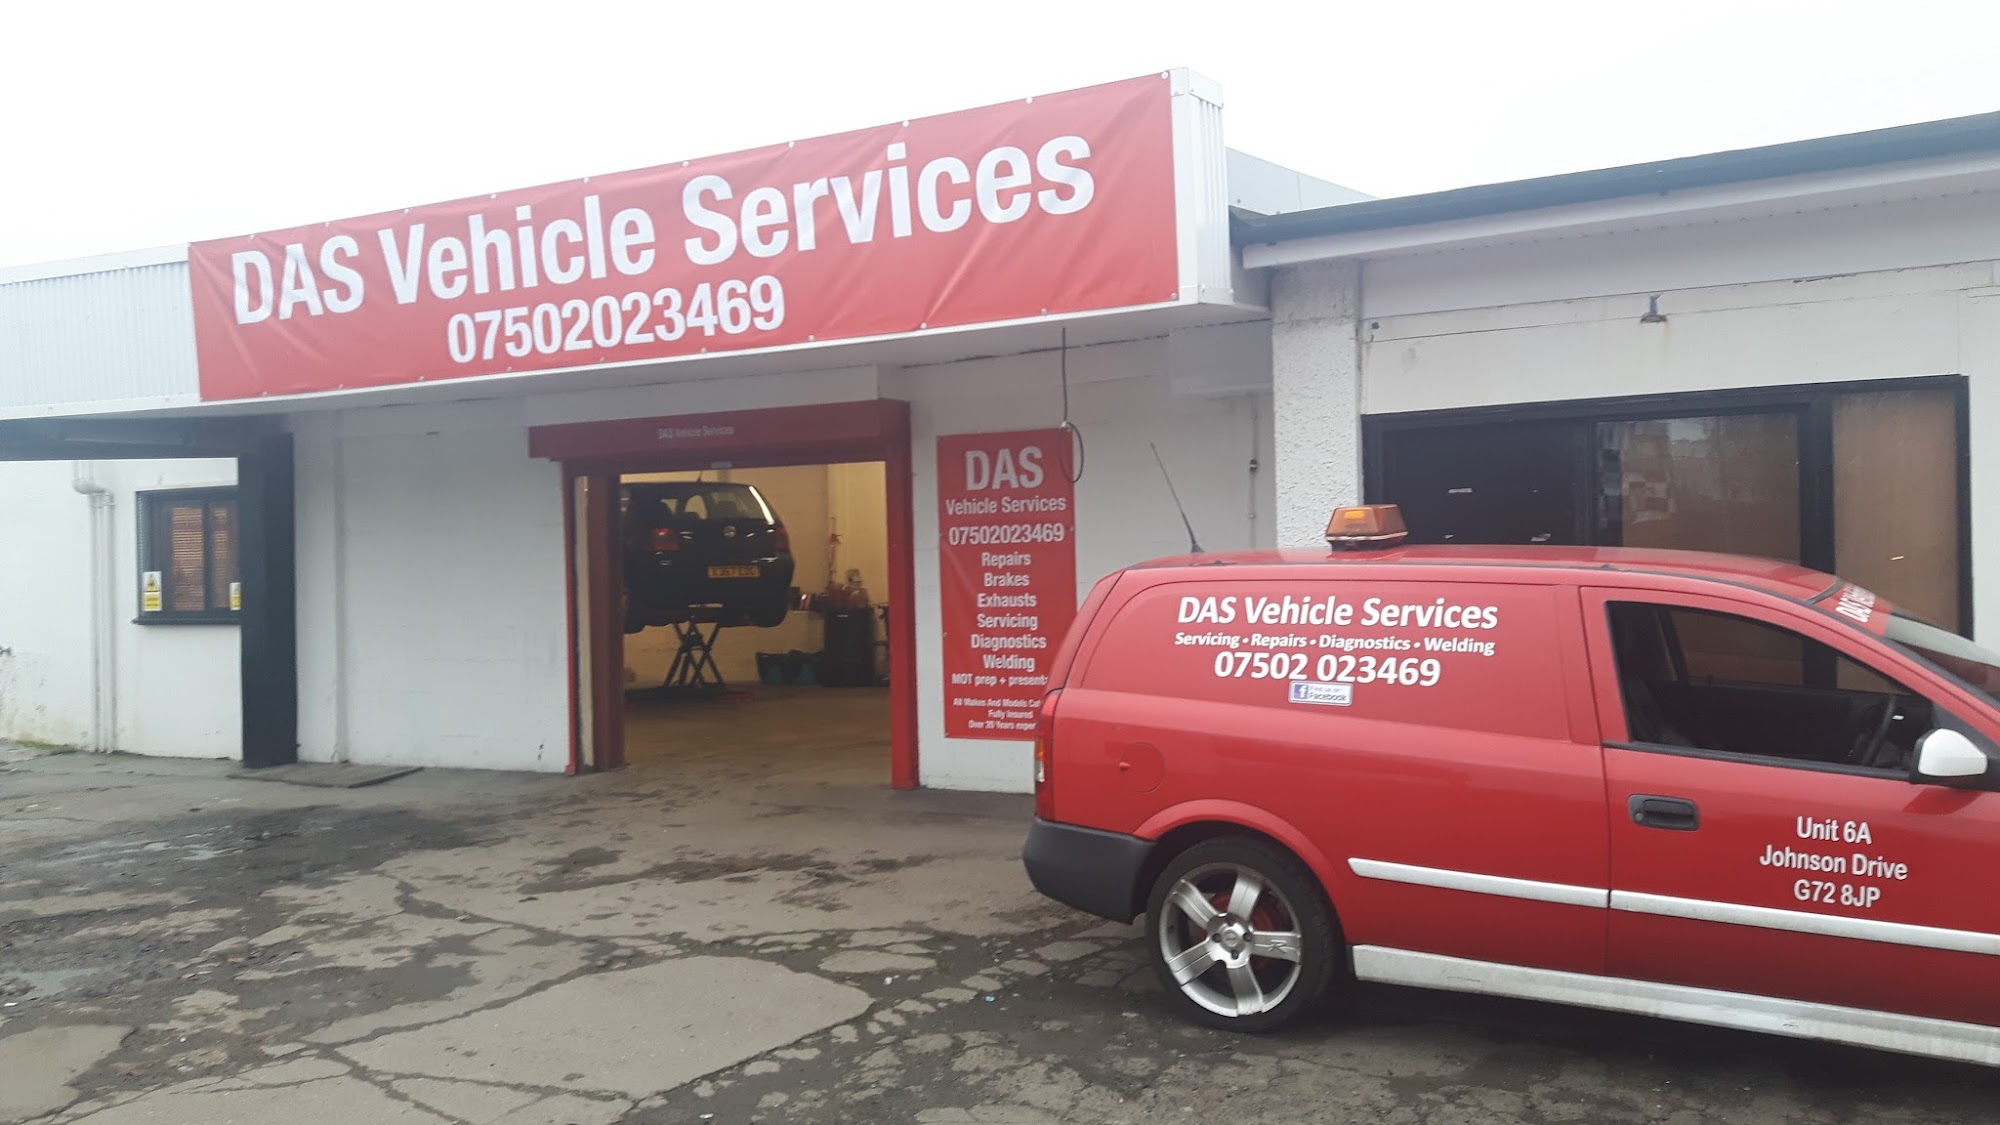 DAS Vehicle Services